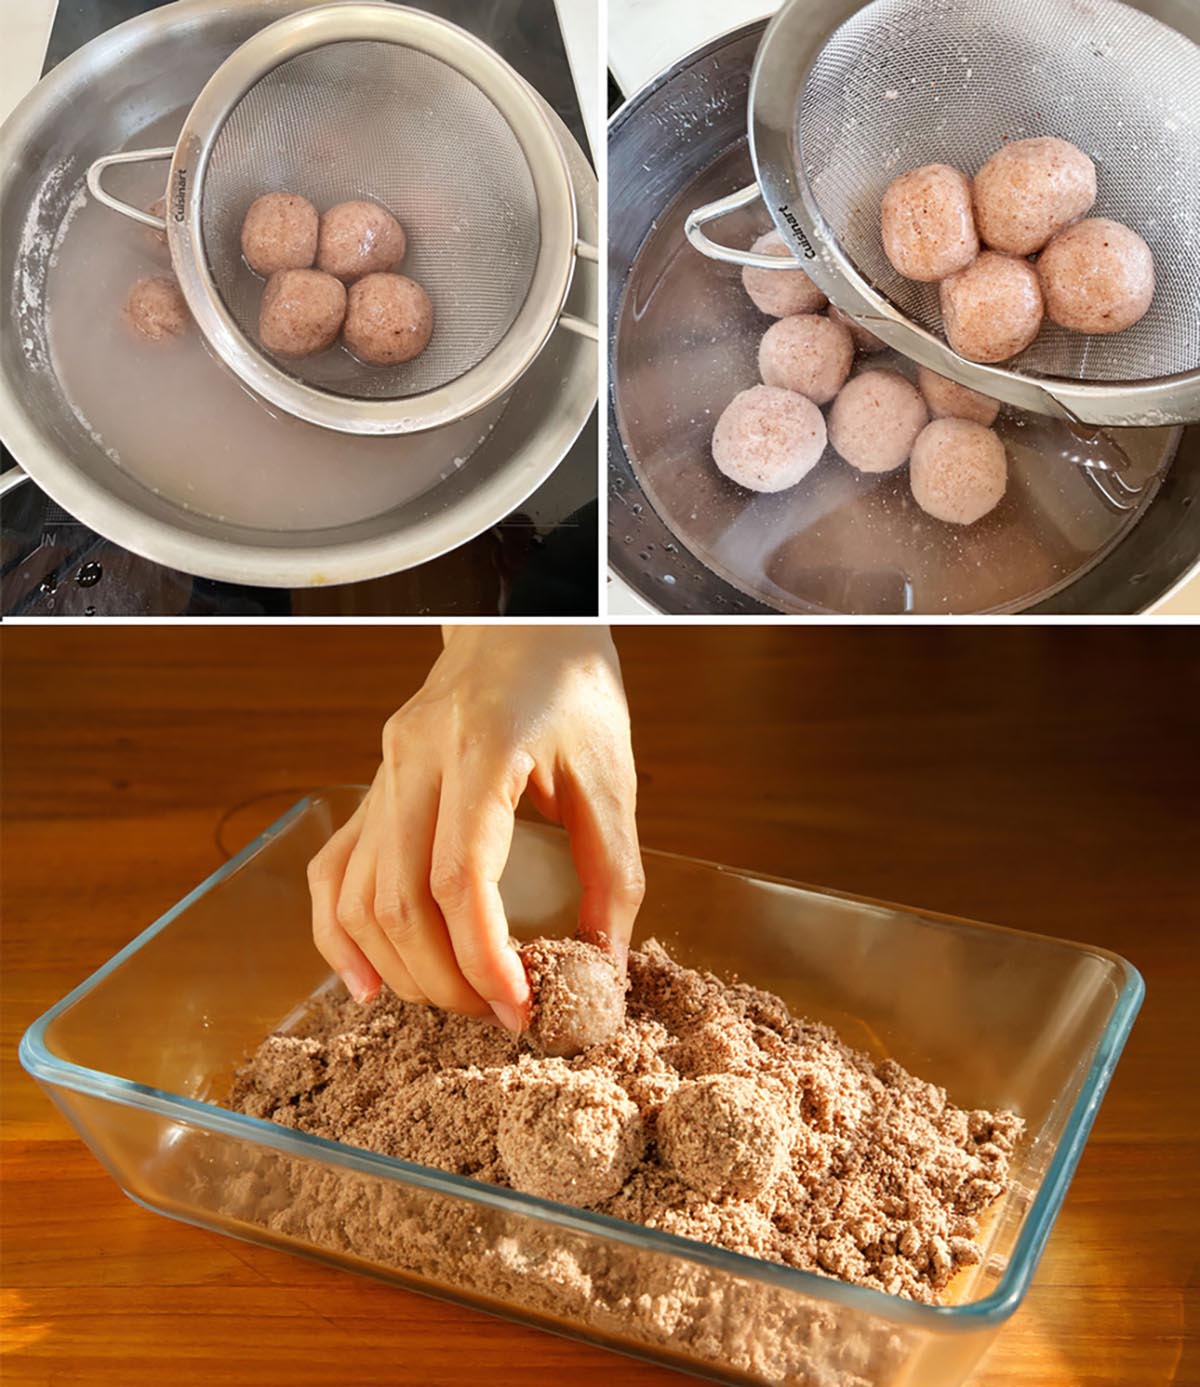 끓는 물에 수수알고 넣고 채반으로 건진다. 찬물에 담아 수수알을 다시 채반으로 건져 팥고물을 묻히는 모습이 있다.